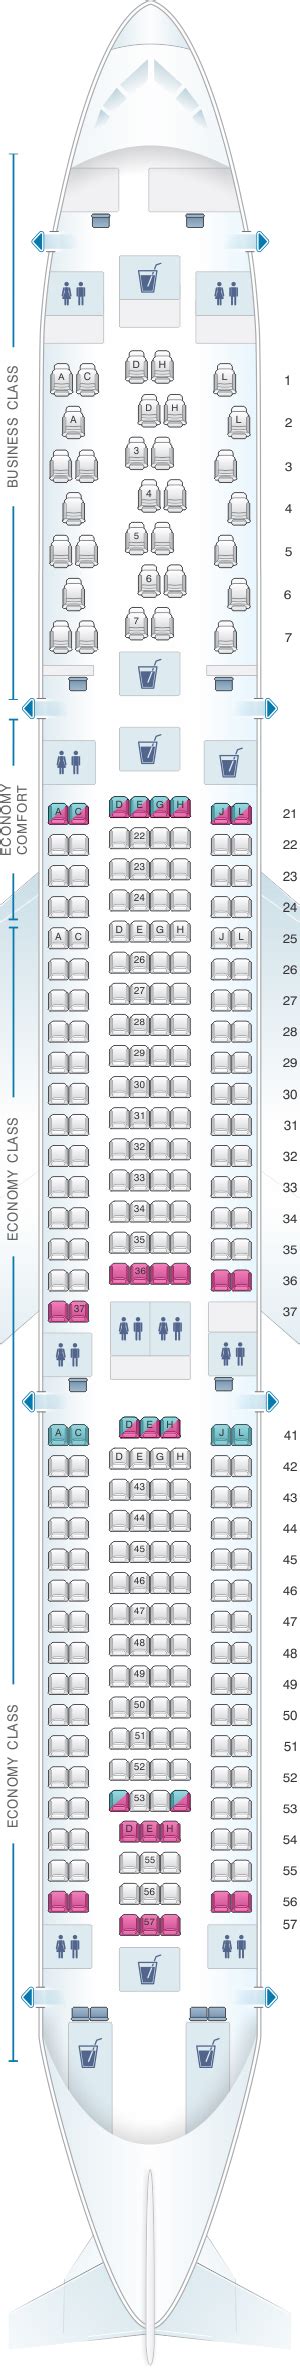 Airbus A330 300 Seating Plan